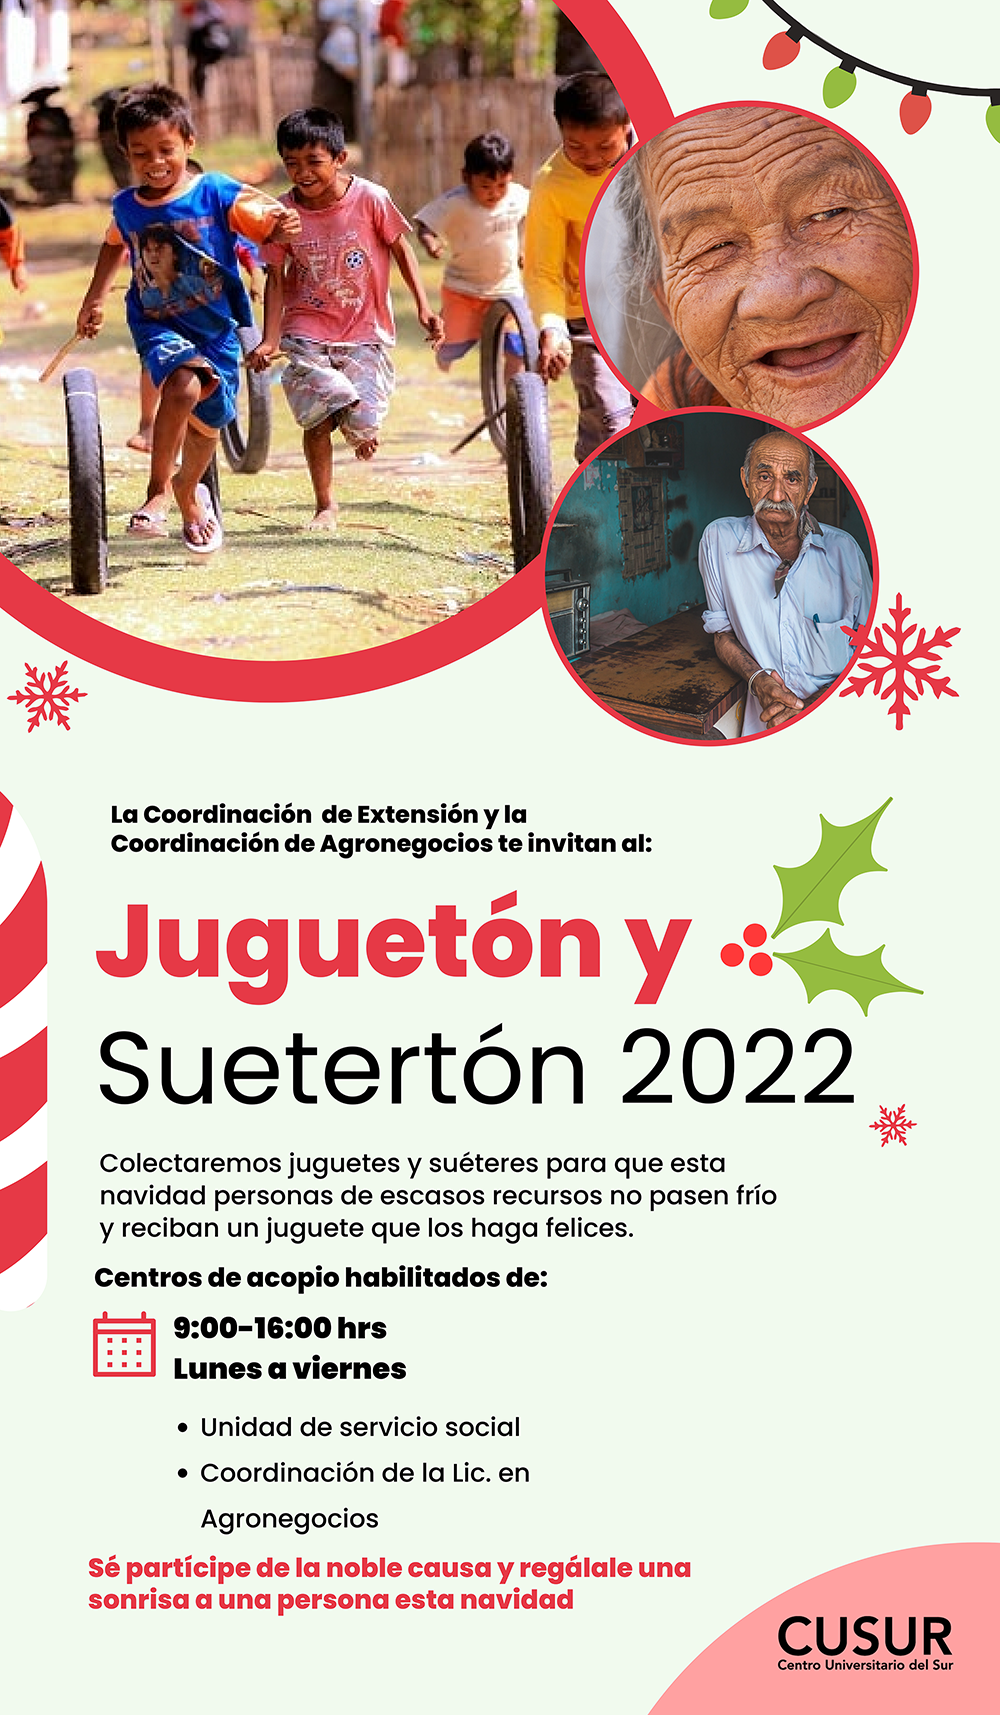 Juguetón y Suetertón 2022